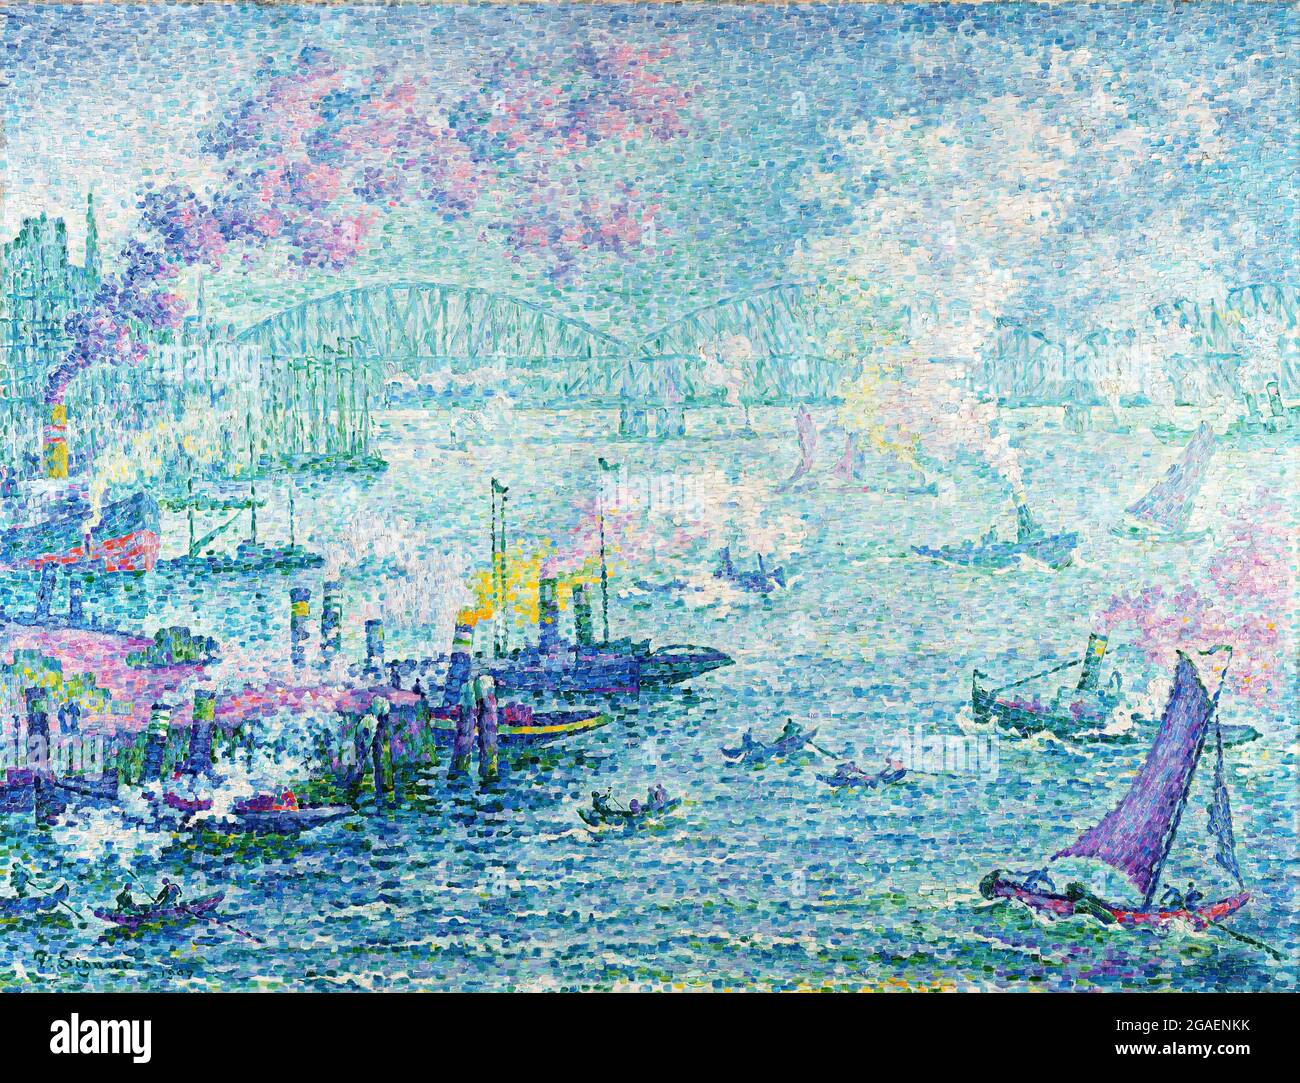 Le port de Rotterdam par Paul Signac (1863-1935), huile sur toile, 1907 Banque D'Images